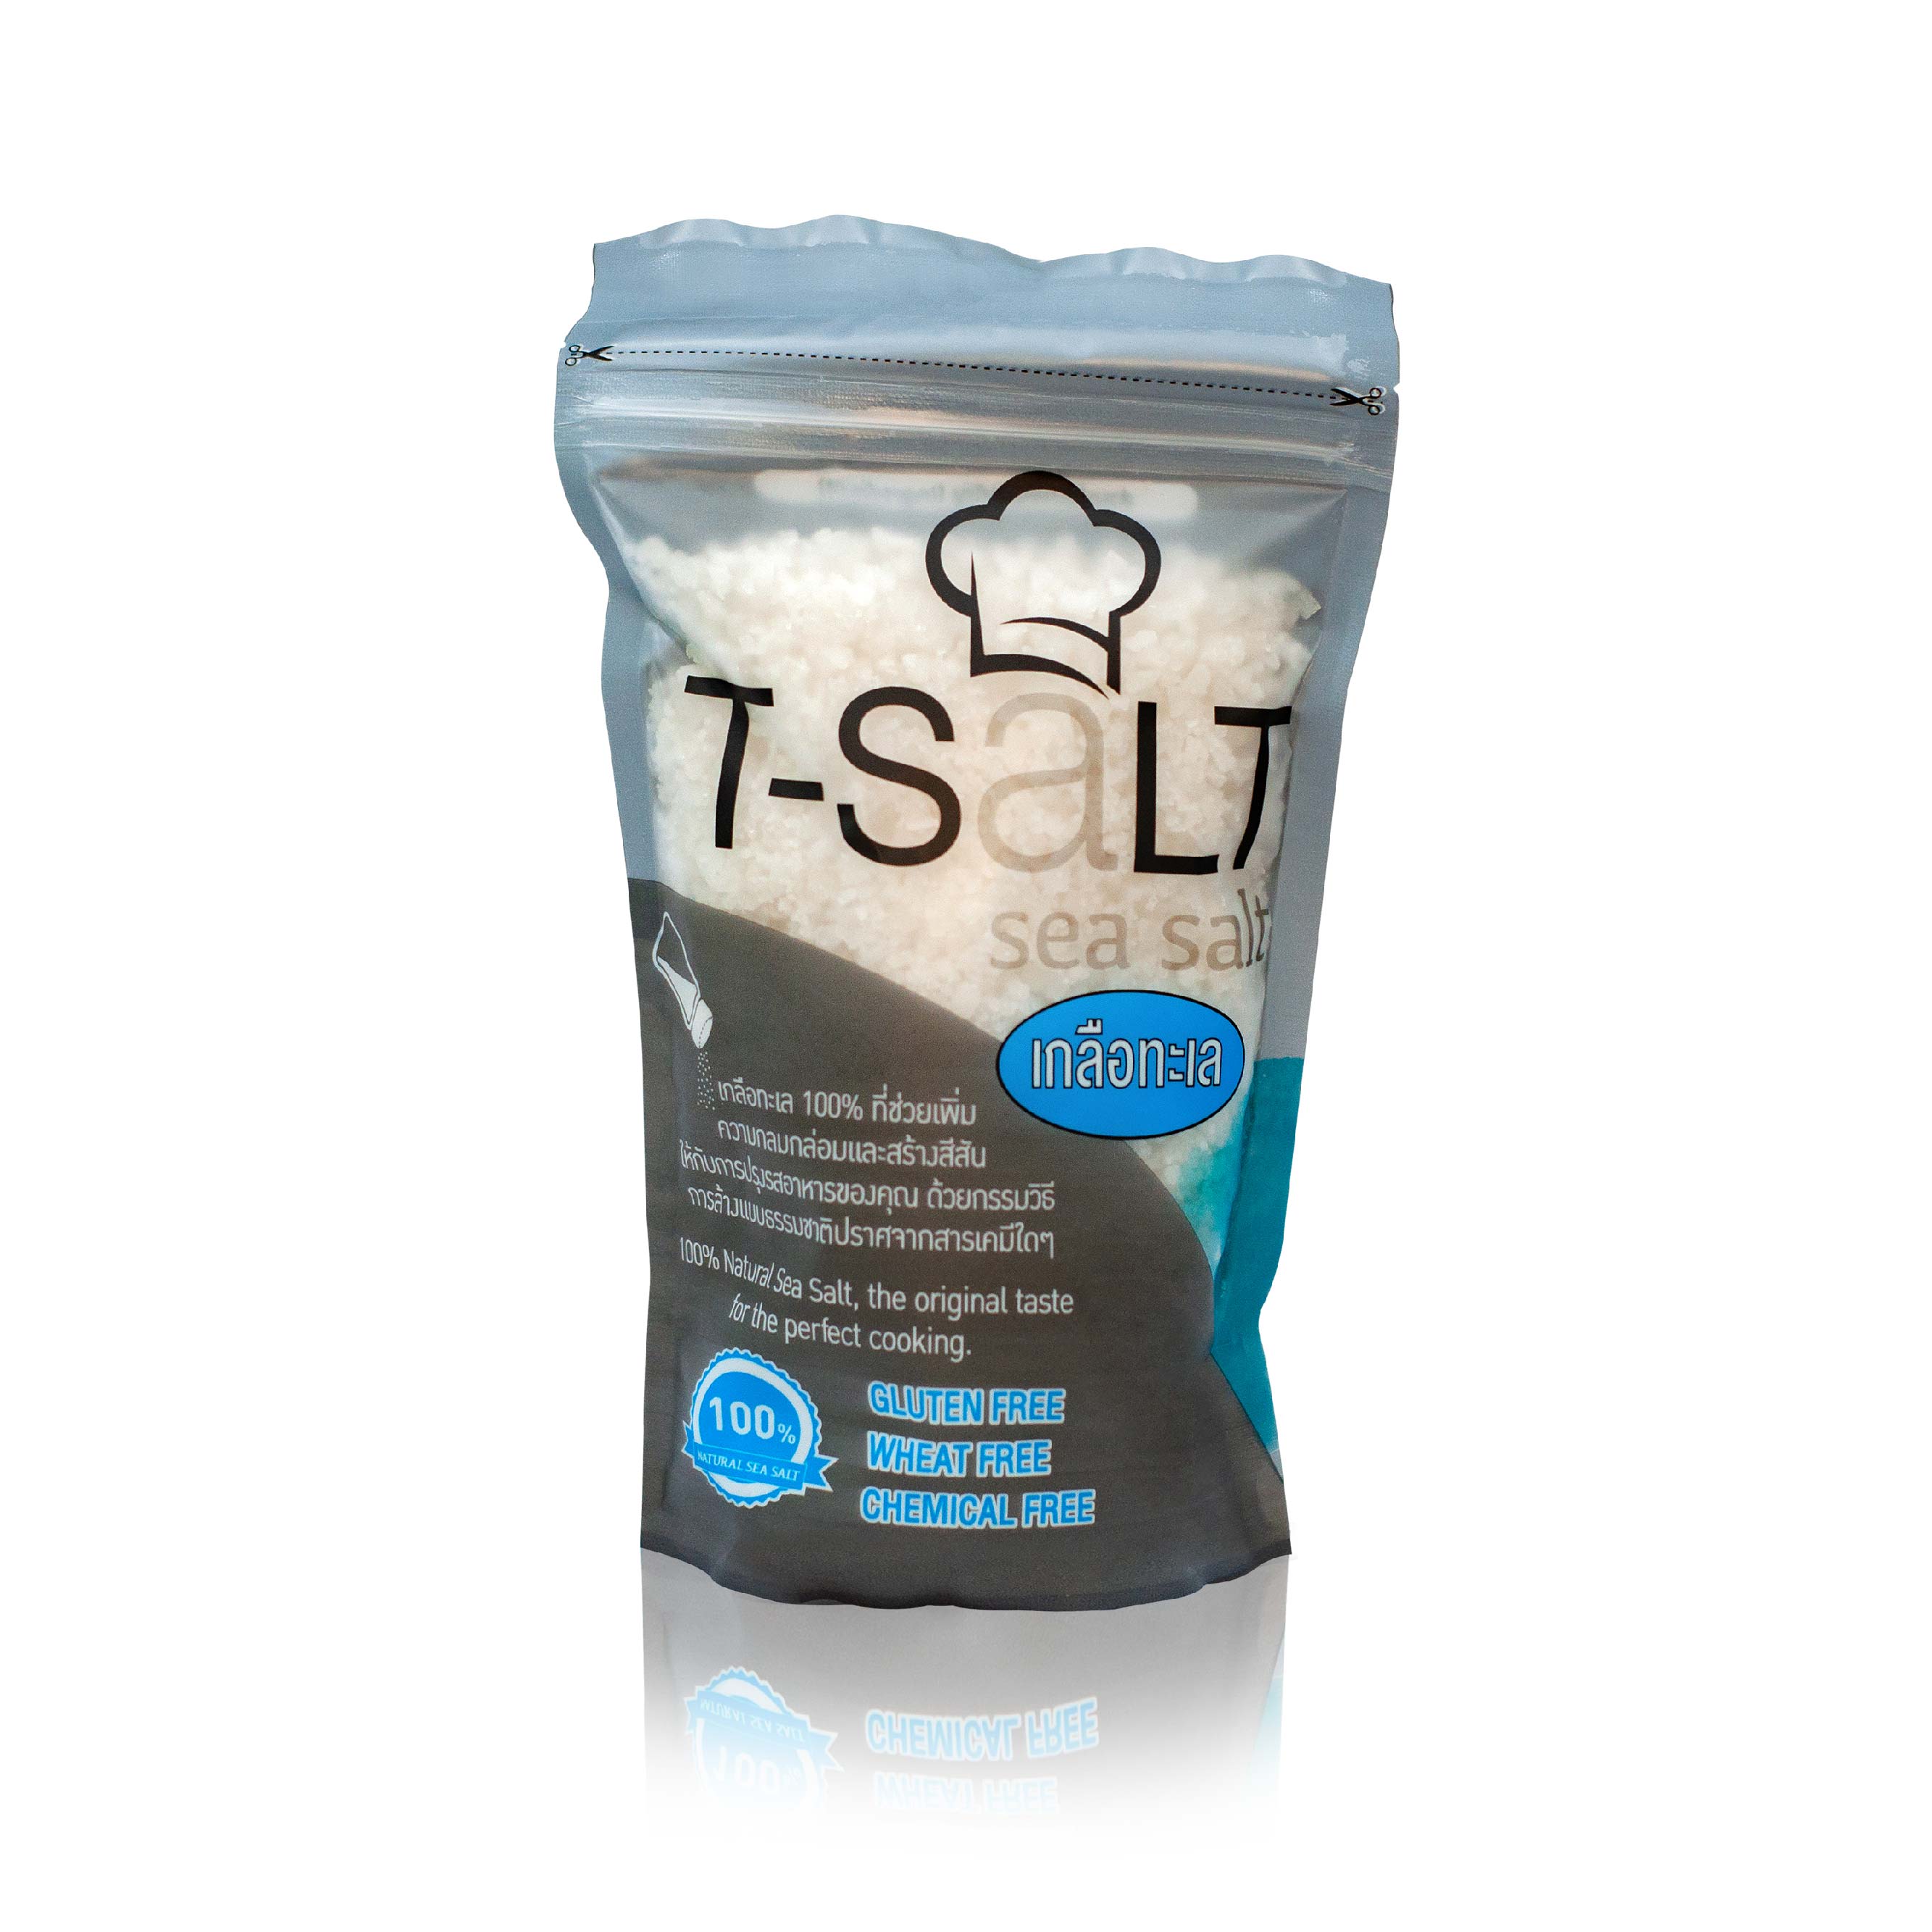 เกลือทะเล T-Salt  (100% Natural Sea Salt) ไม่เติมสารไอโอดีน ปราศจากสารเคมี (จัดนำหน่ายโดยบริษัทเจ้าของแบรนด์)